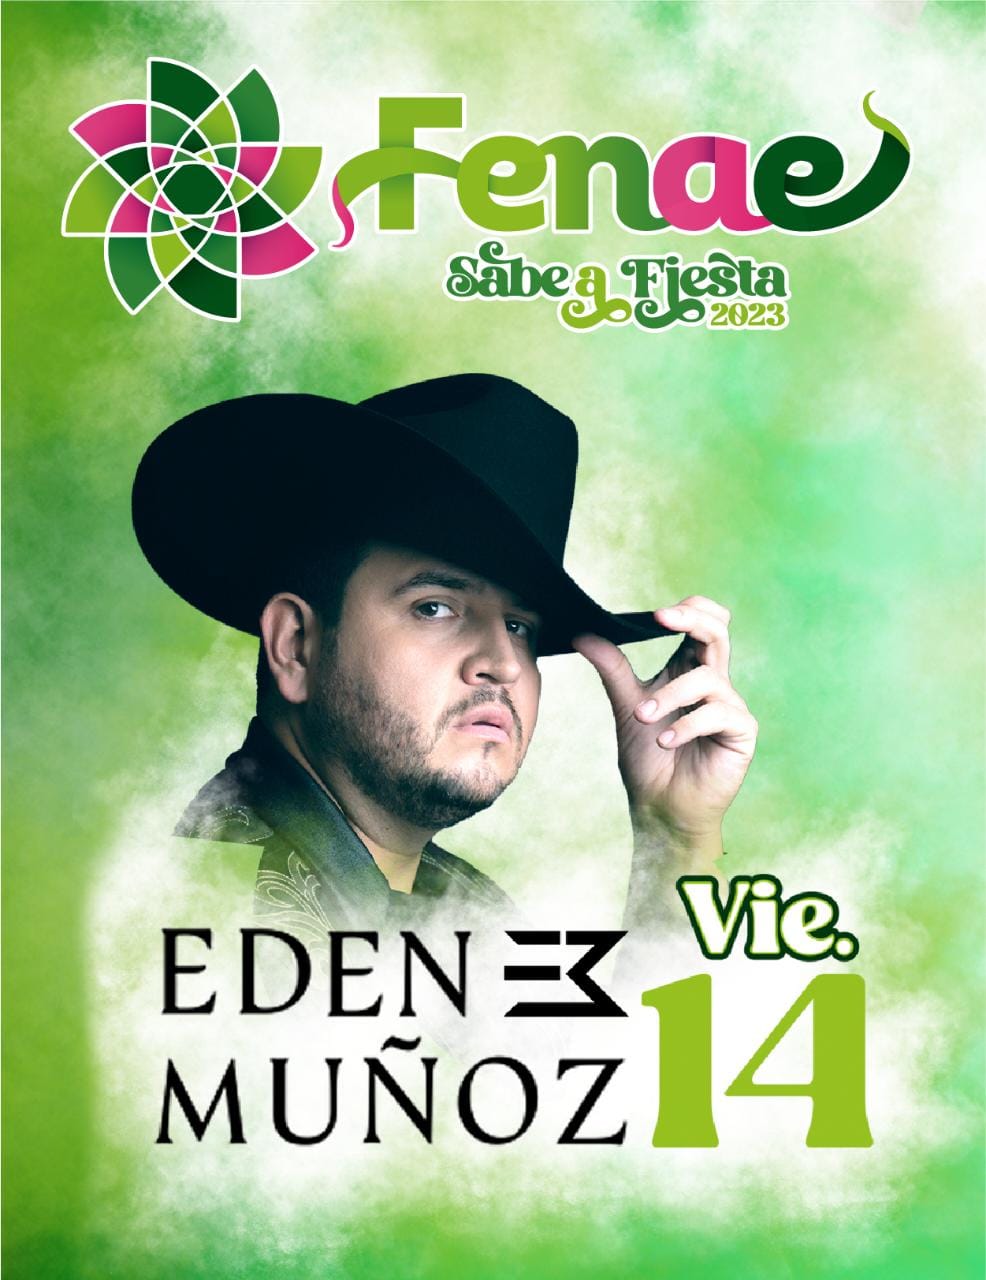 Edén Muñoz, ha realizado colaboraciones y ha compuesto canciones para diferentes intérpretes y agrupaciones